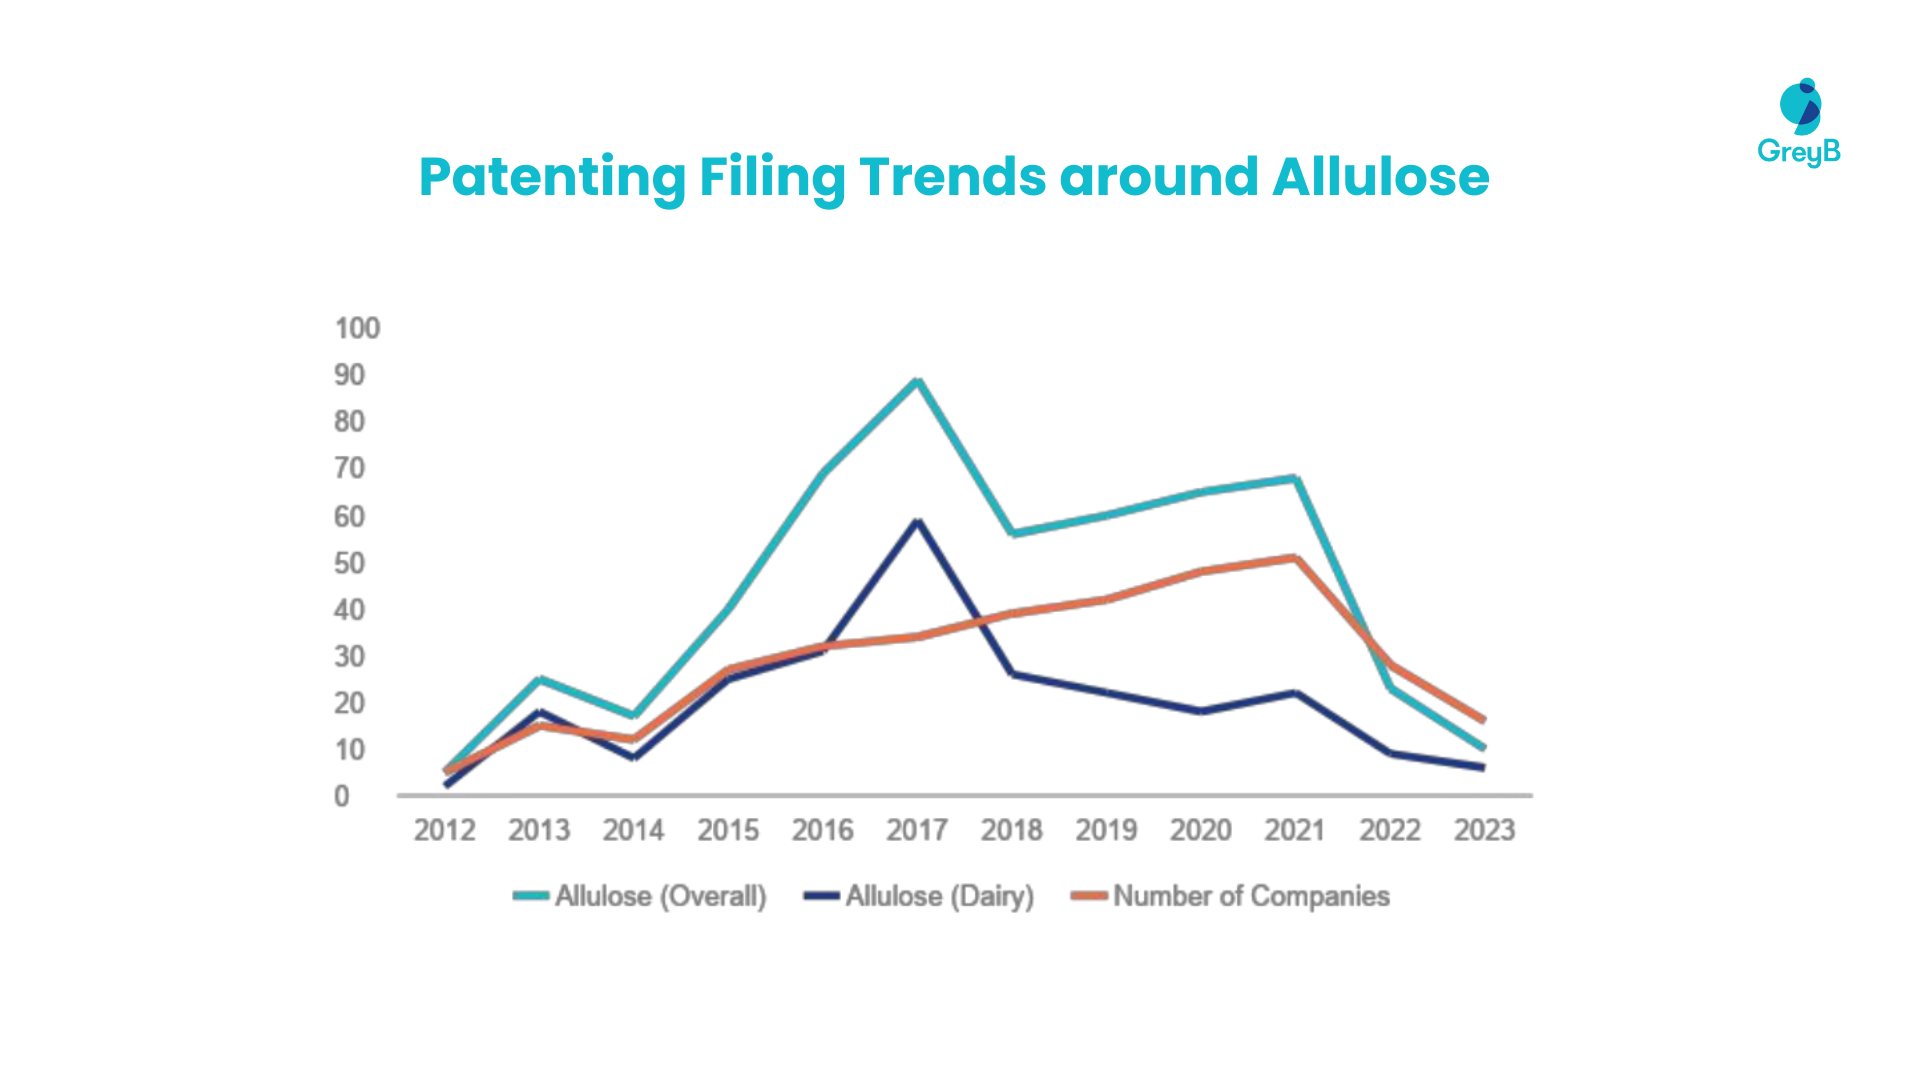 Patent filing trends around allulose